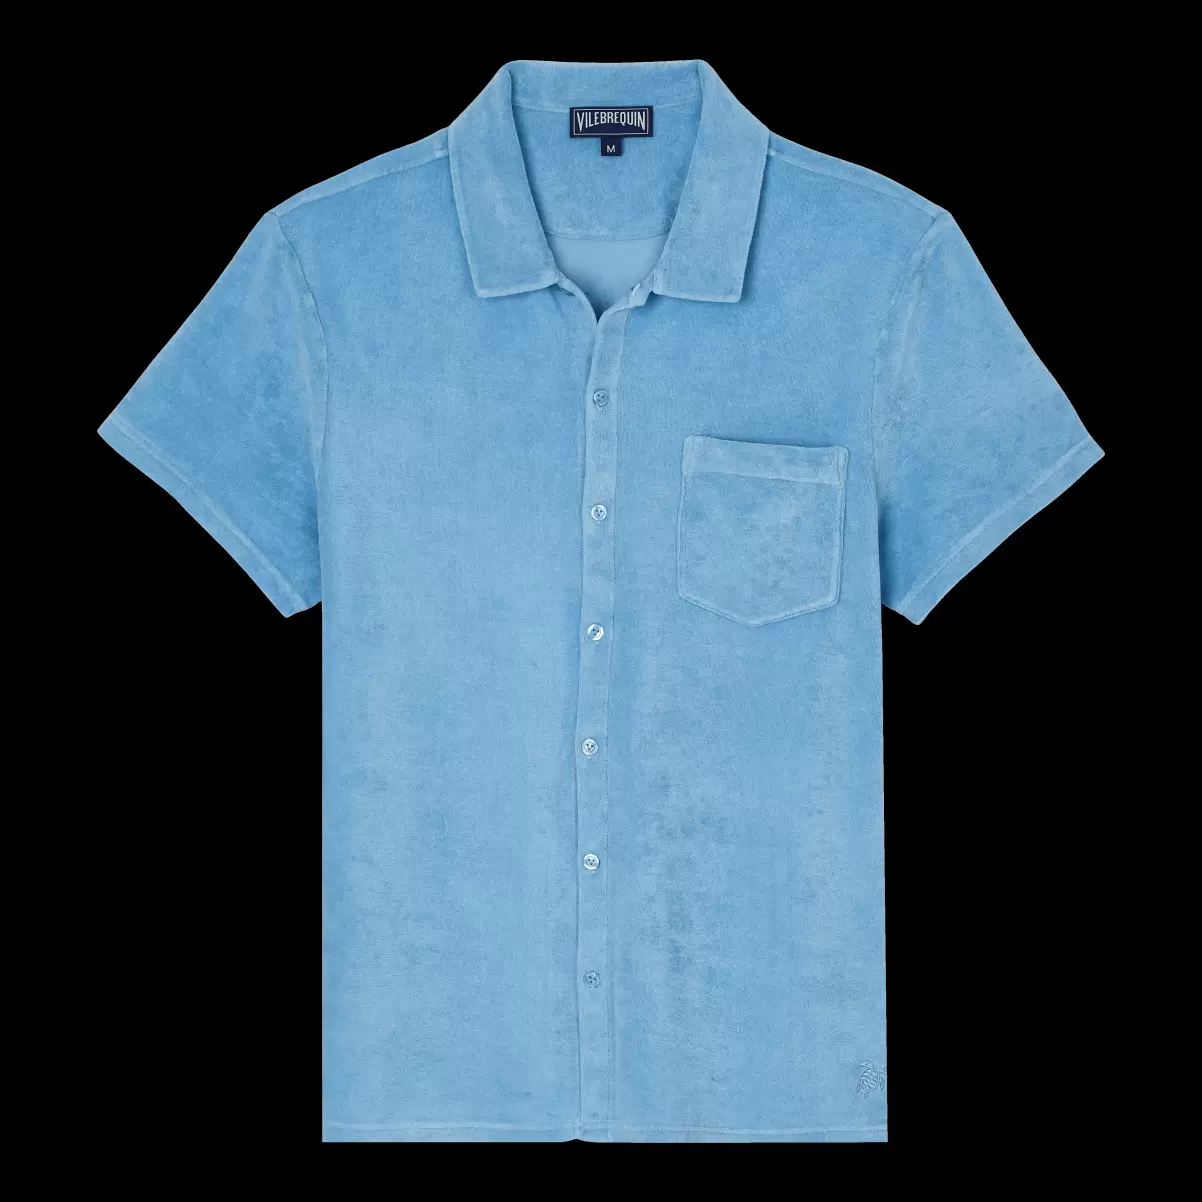 Billig Herren Vilebrequin Source / Blau Shirts Solid Bowling-Hemd Aus Frottee Mit Mineralfarbstoff Für Herren - 3